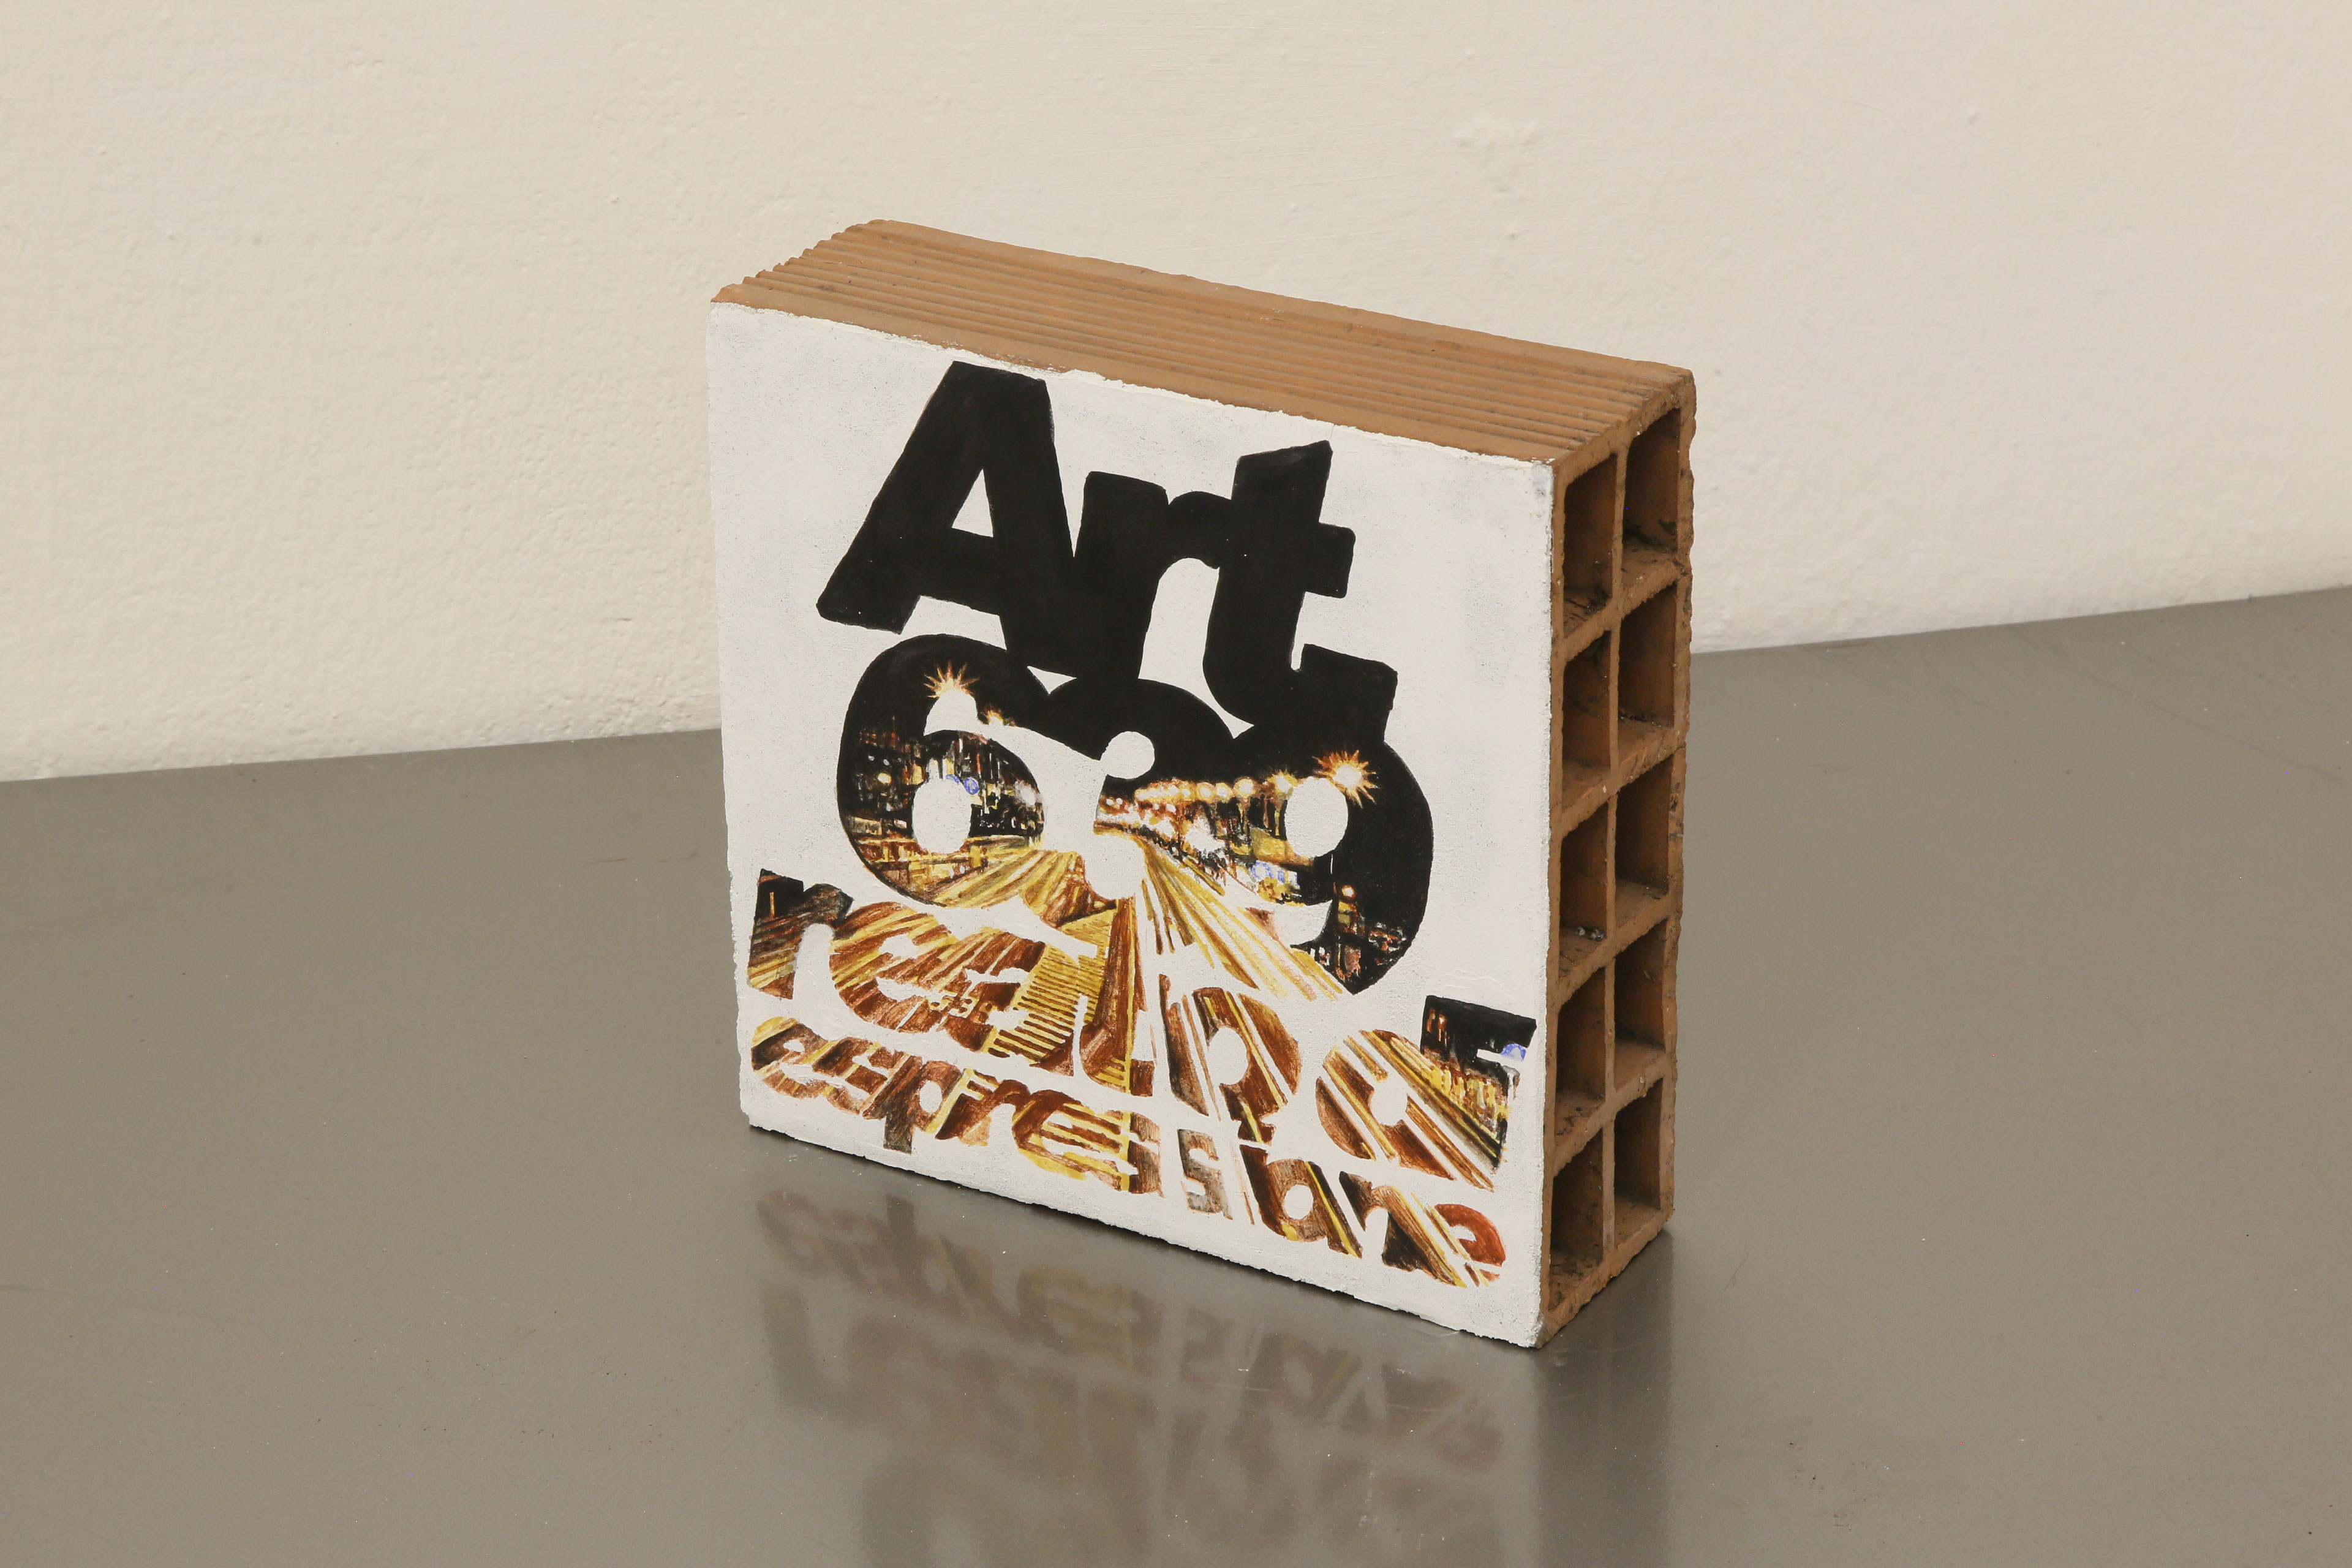 ''Art.639 Reato di espressione'' Affresco on terracotta brick
24 x 23,5 x 8 cm
(variables dimensions) 2019